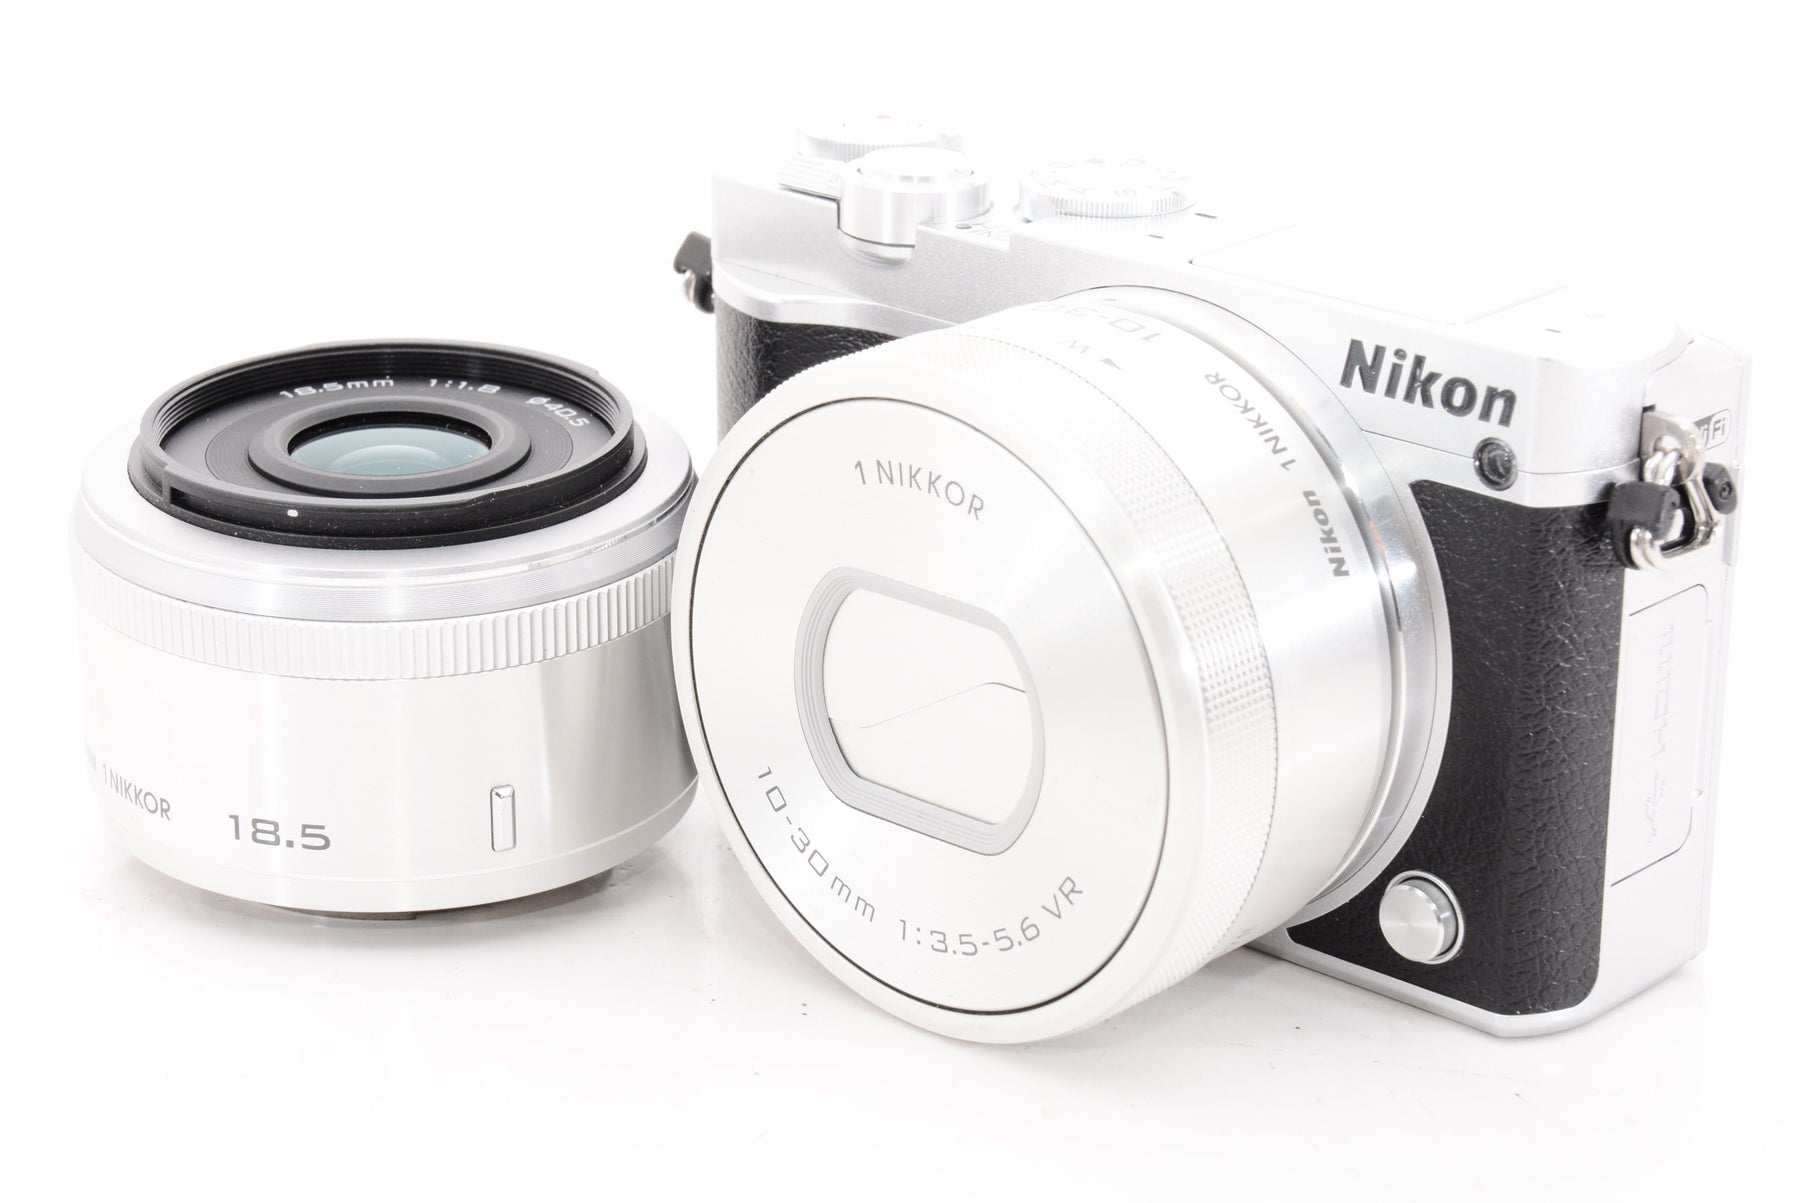 ニコン Nikon1 J5 ダブルレンズキット シルバー